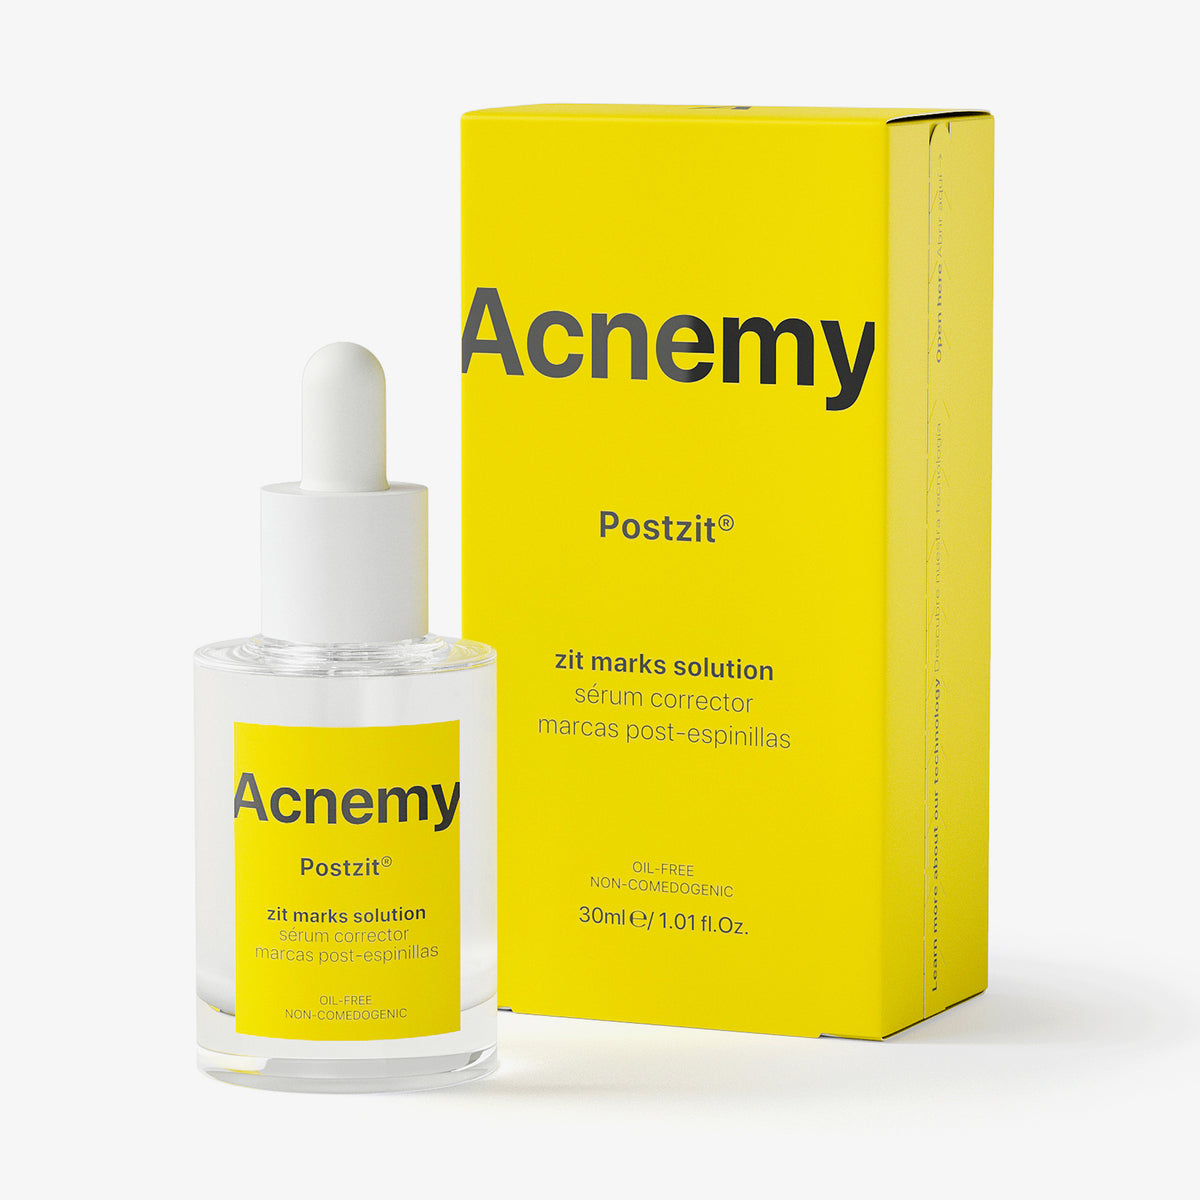 Eine Flasche Acnemy Postzit® plus Verpackung vor weißem Hintergrund